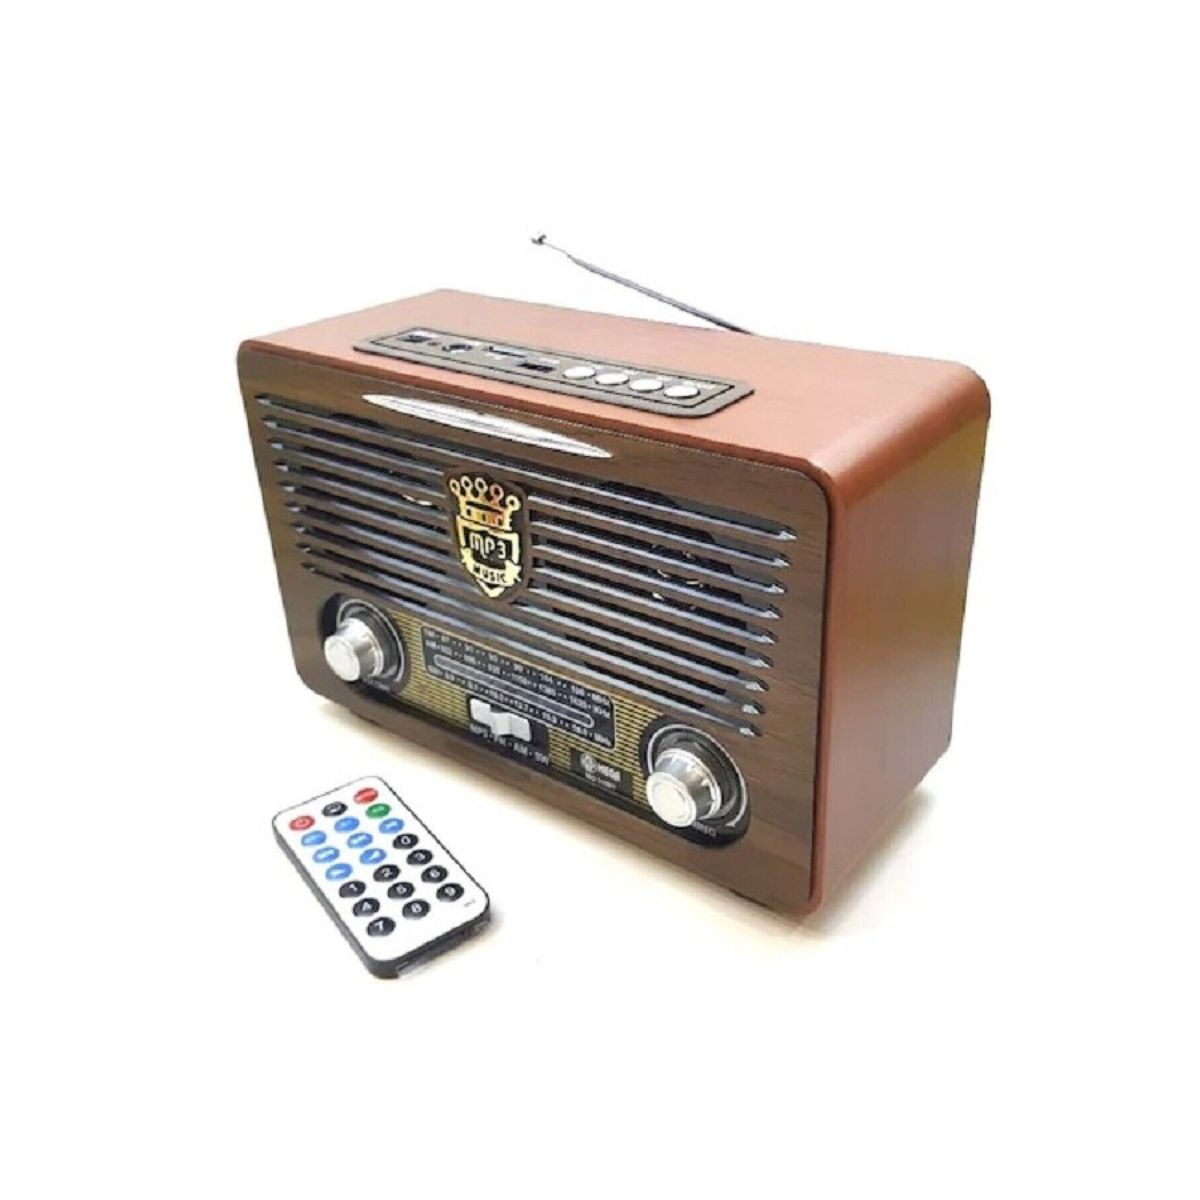 Braun 300 Radio Vintage Radio Orjinal Old Radio Radio Lamp Radio 